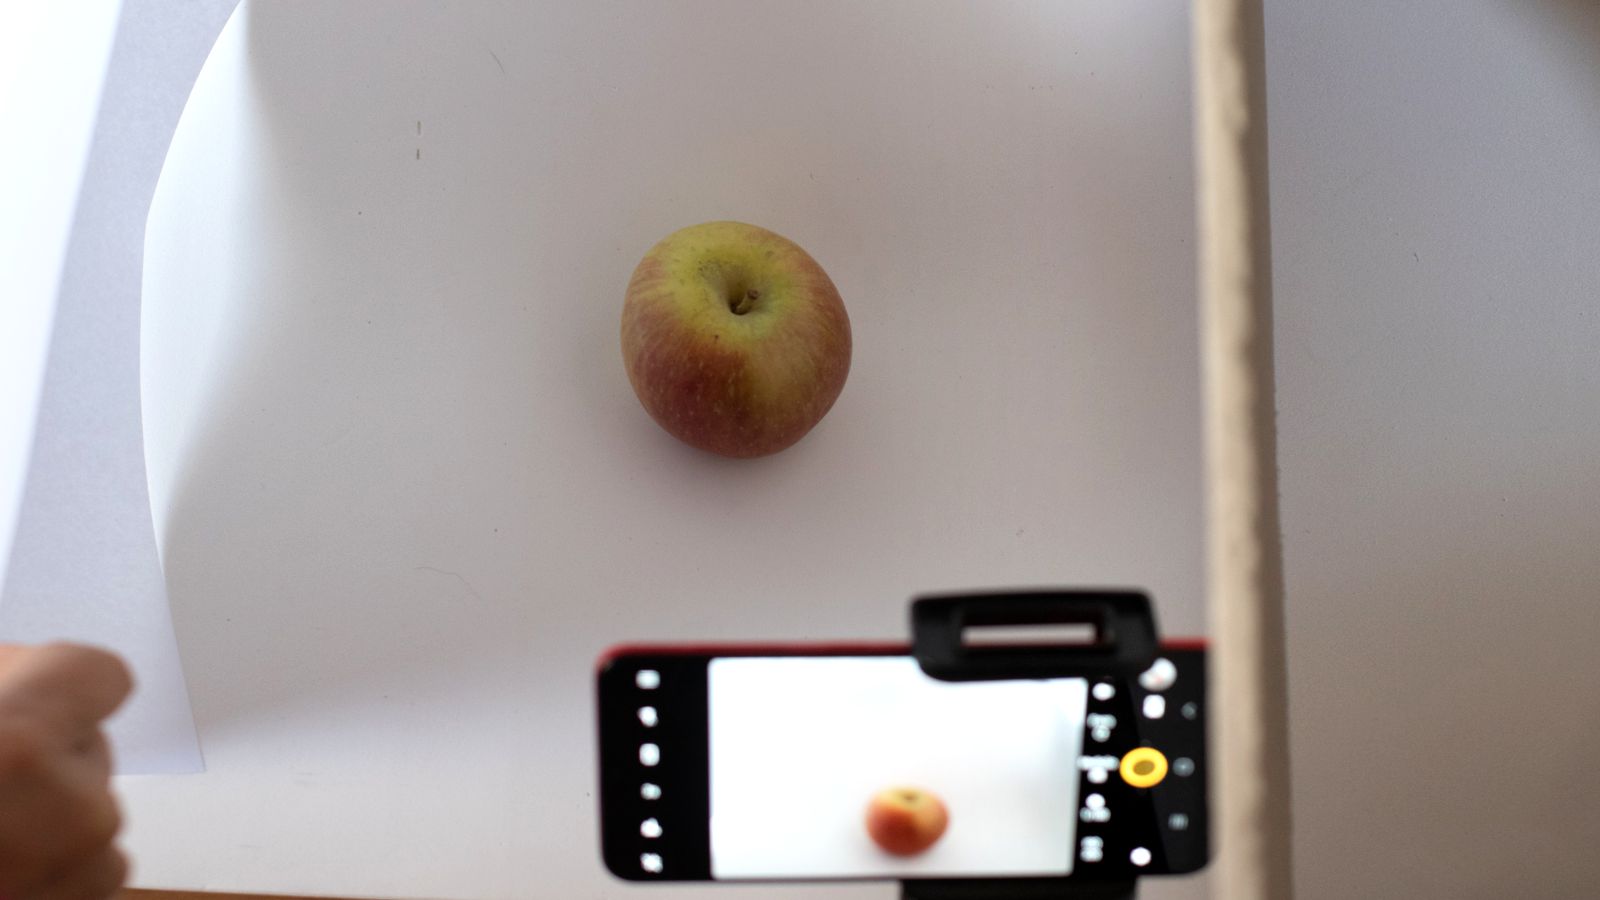 Tirando foto de uma maçã